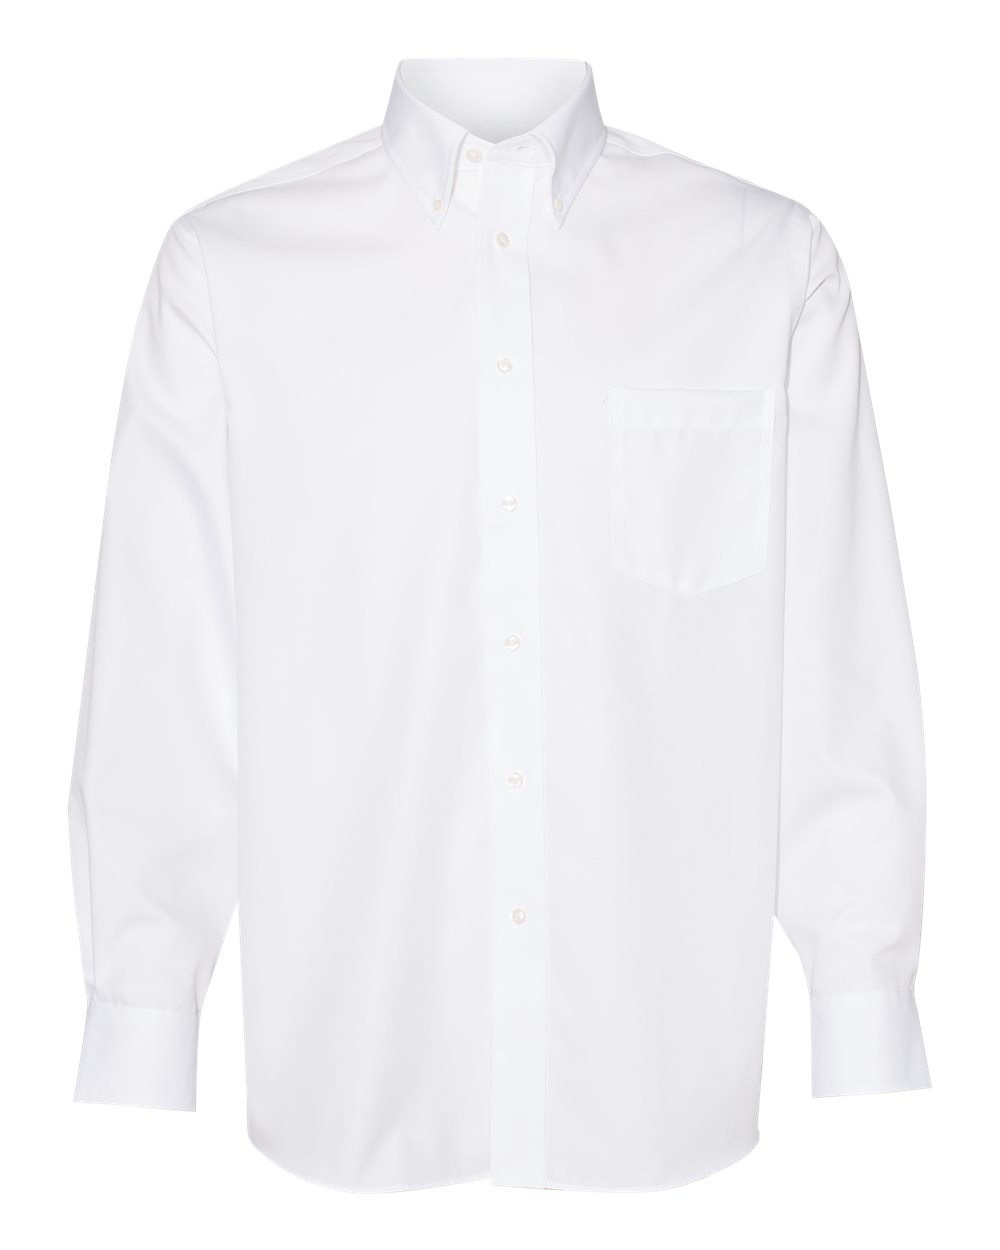 Ultimate Non-Iron Flex Collar Shirt - 13V0459-